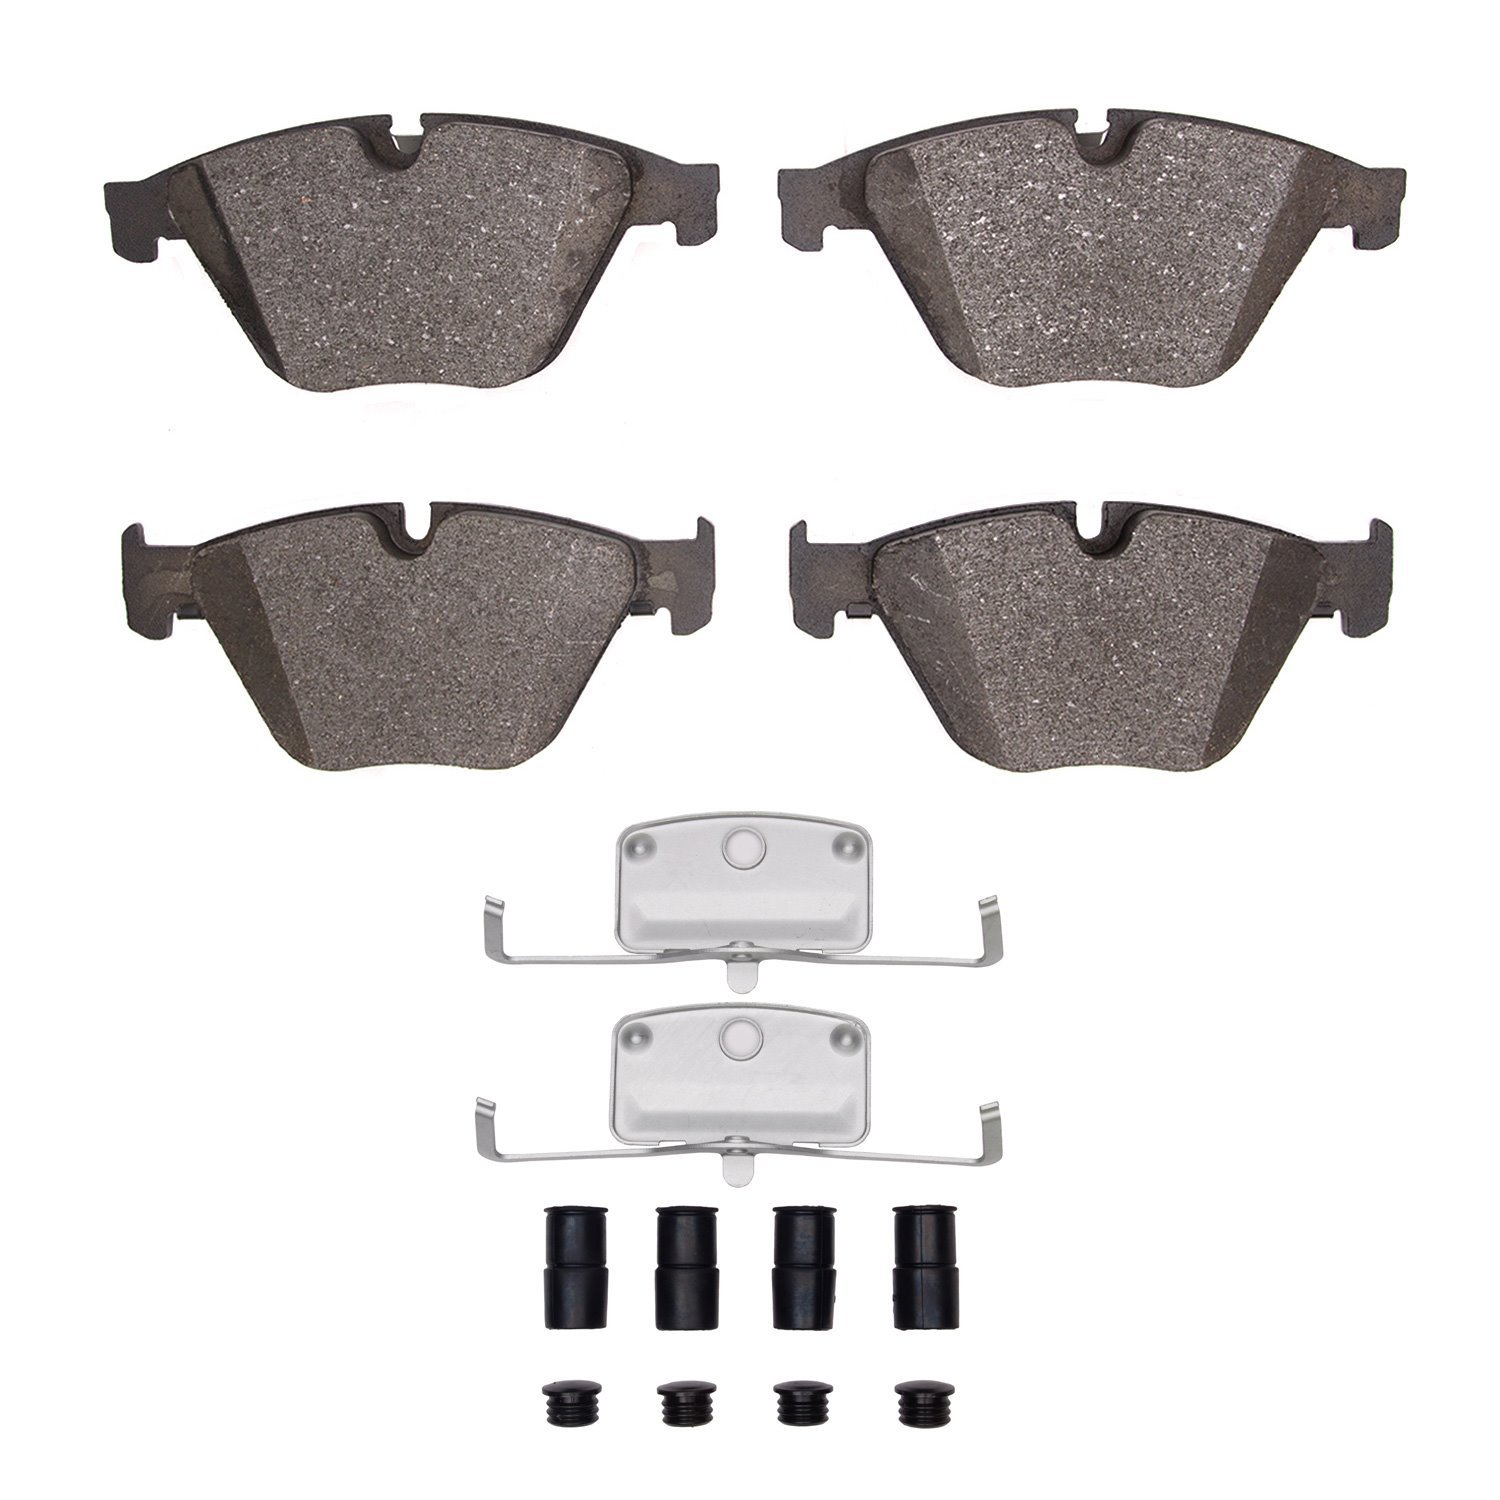 Ceramic Brake Pads & Hardware Kit, 2011-2019 BMW, Position: Front